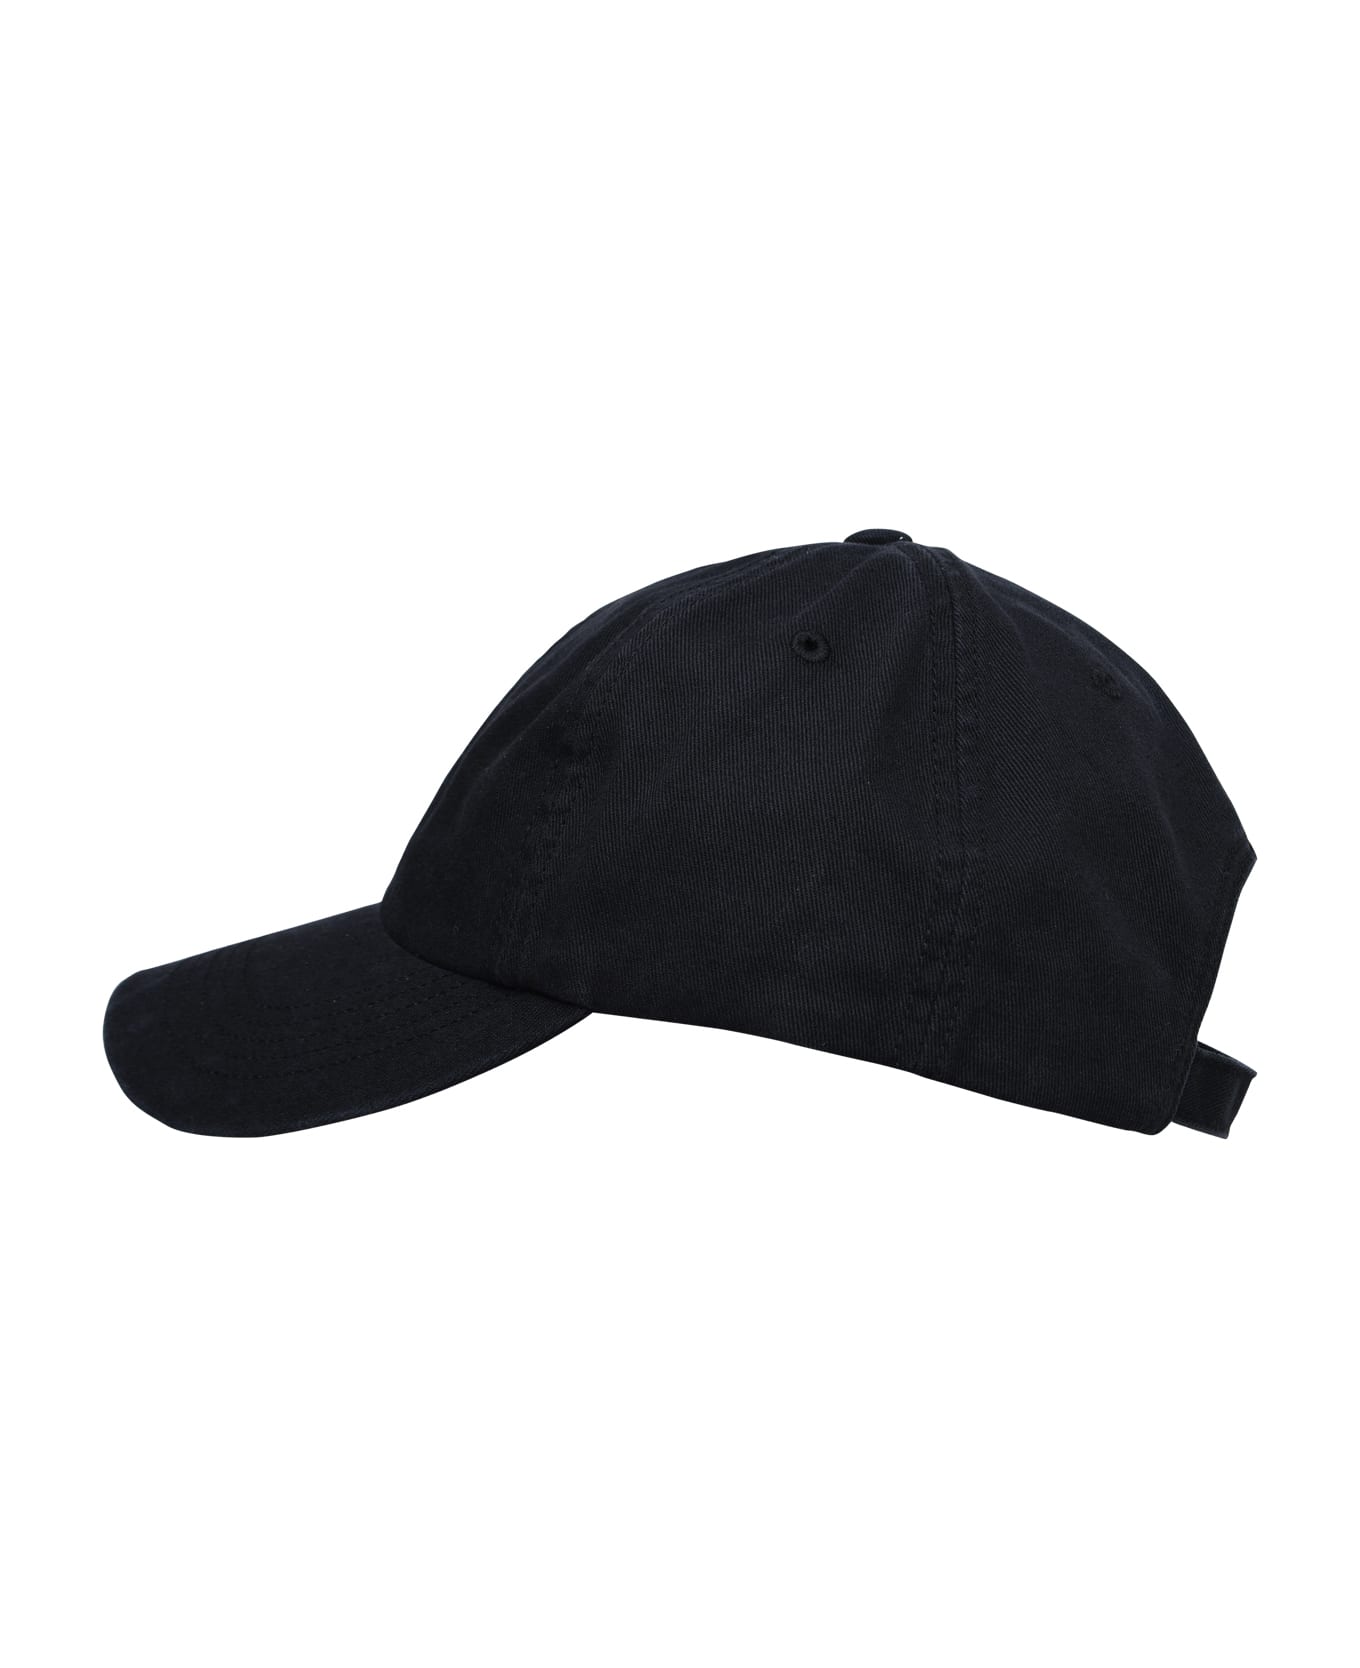 Y-3 'dad' Black Cotton Hat - Black